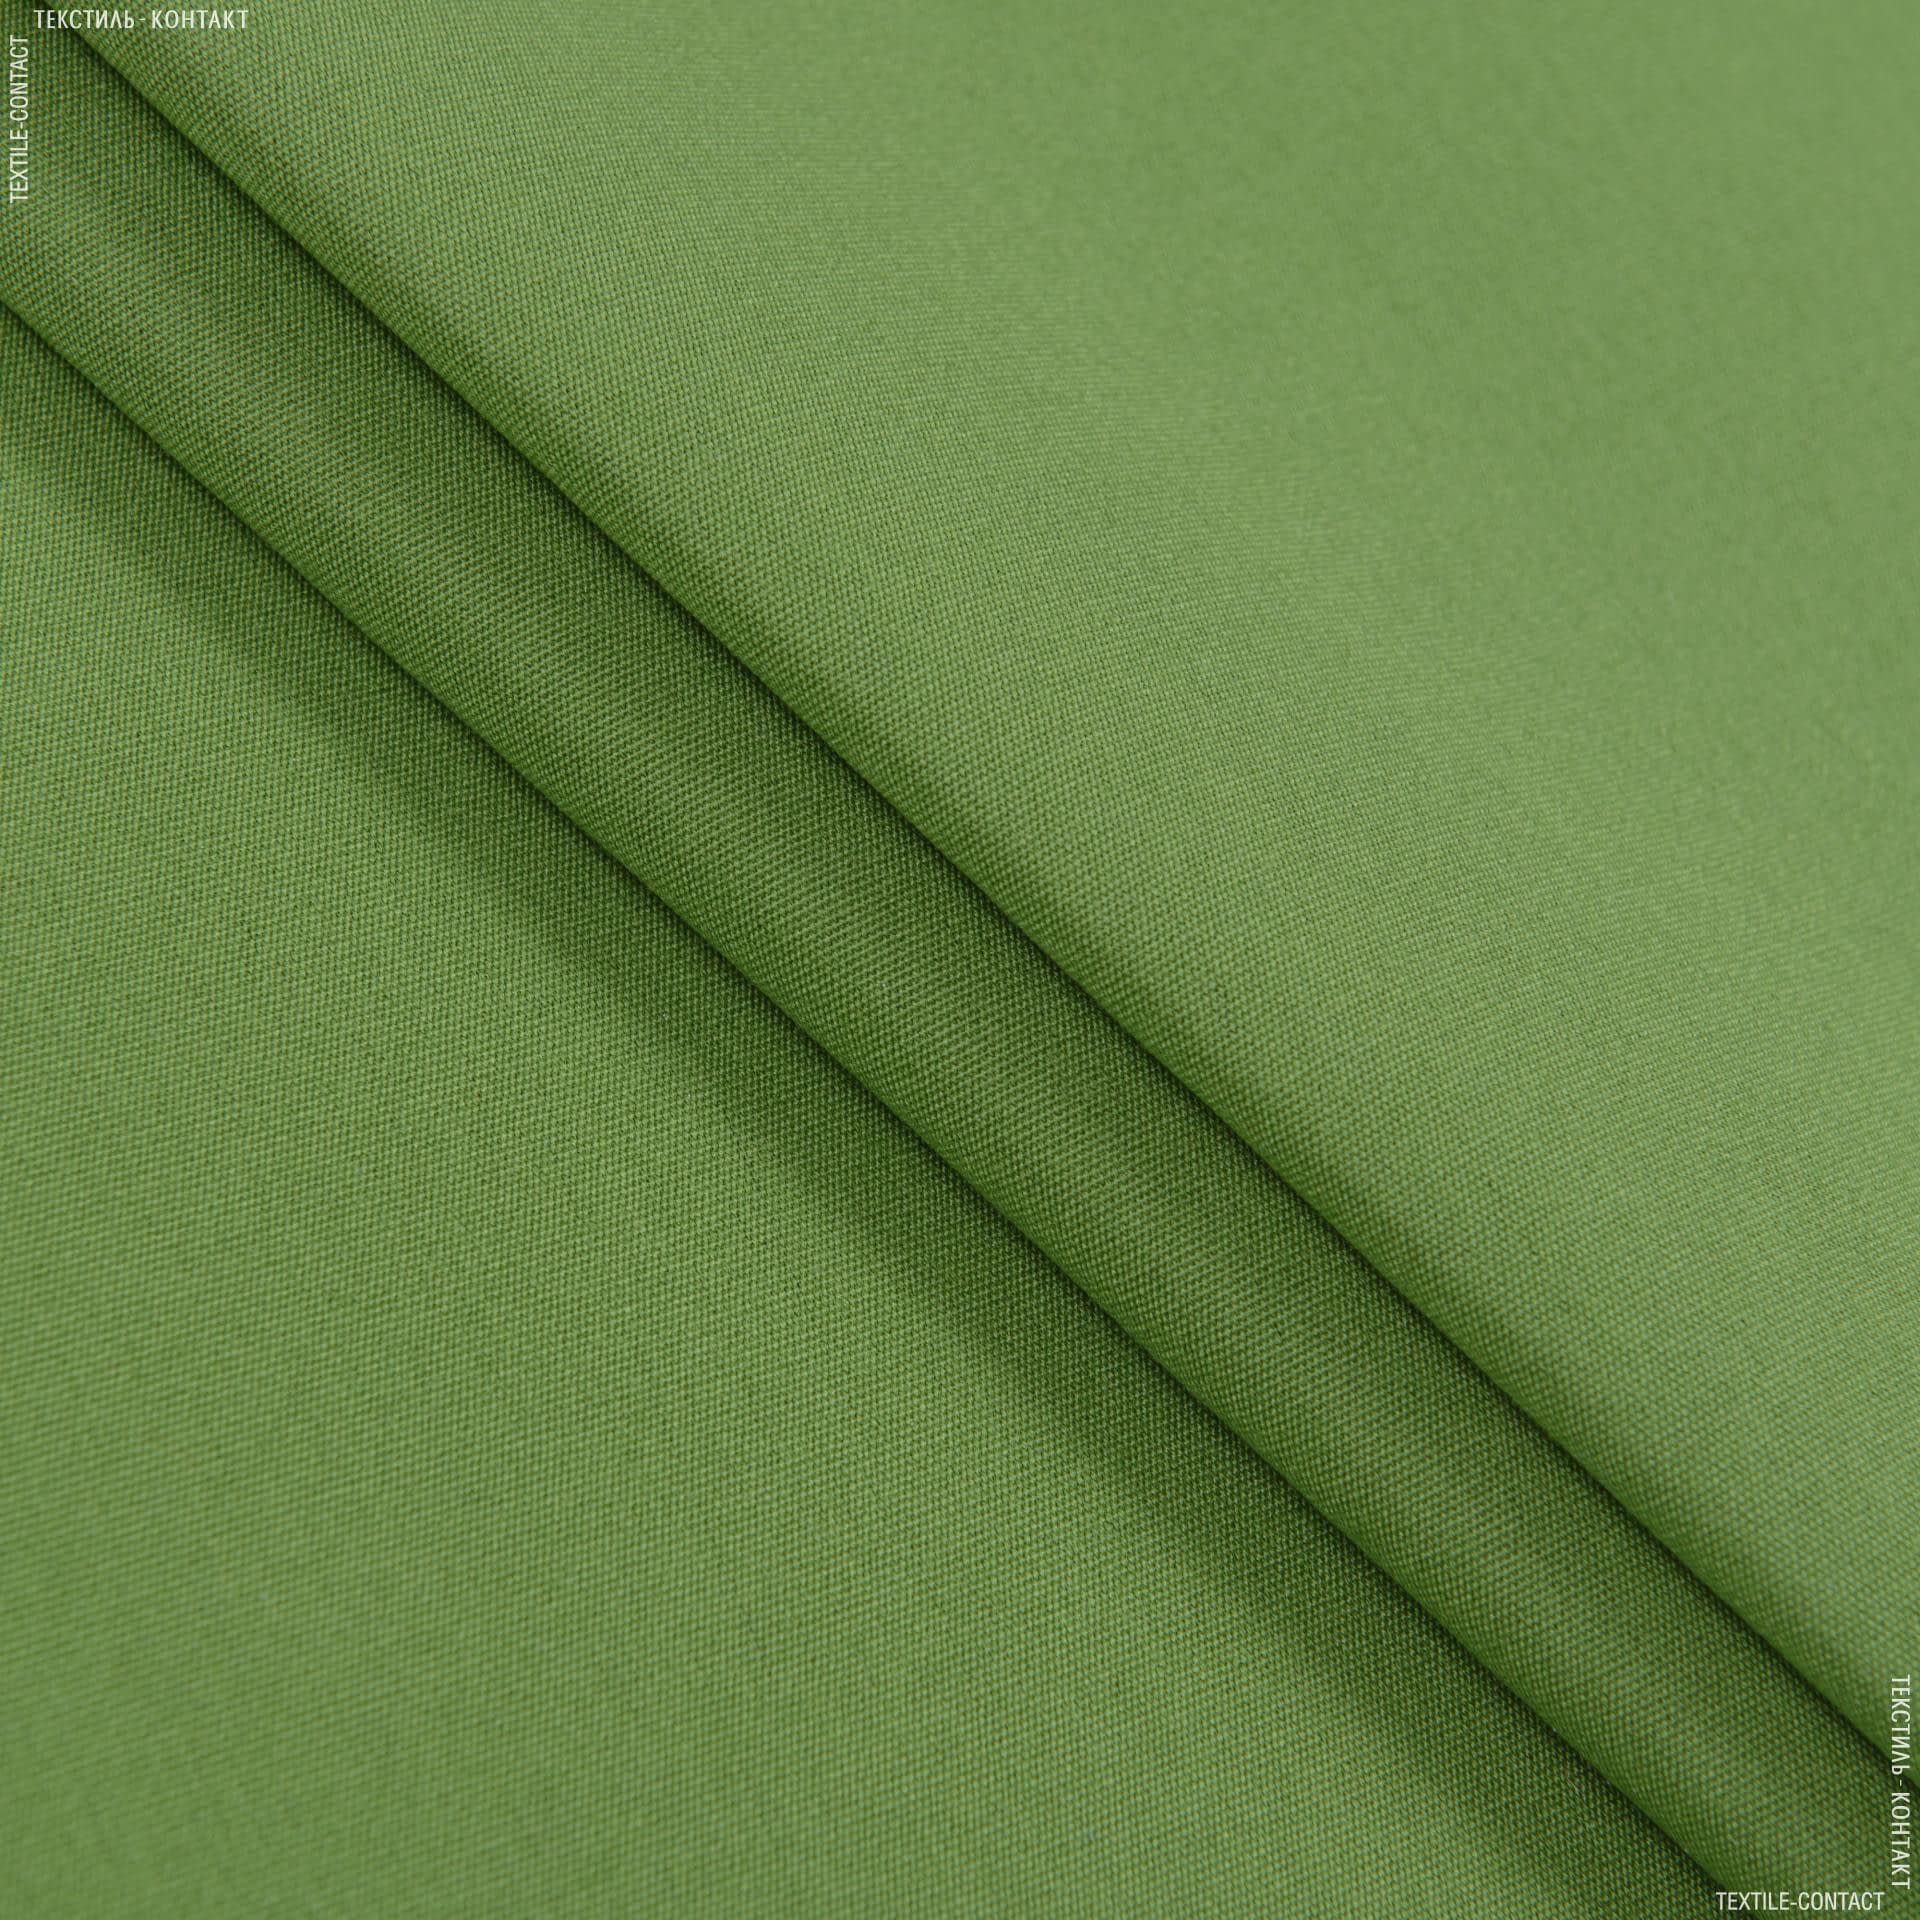 Ткани для маркиз - Дралон сток без тефлоновой пропитки / зеленая трава